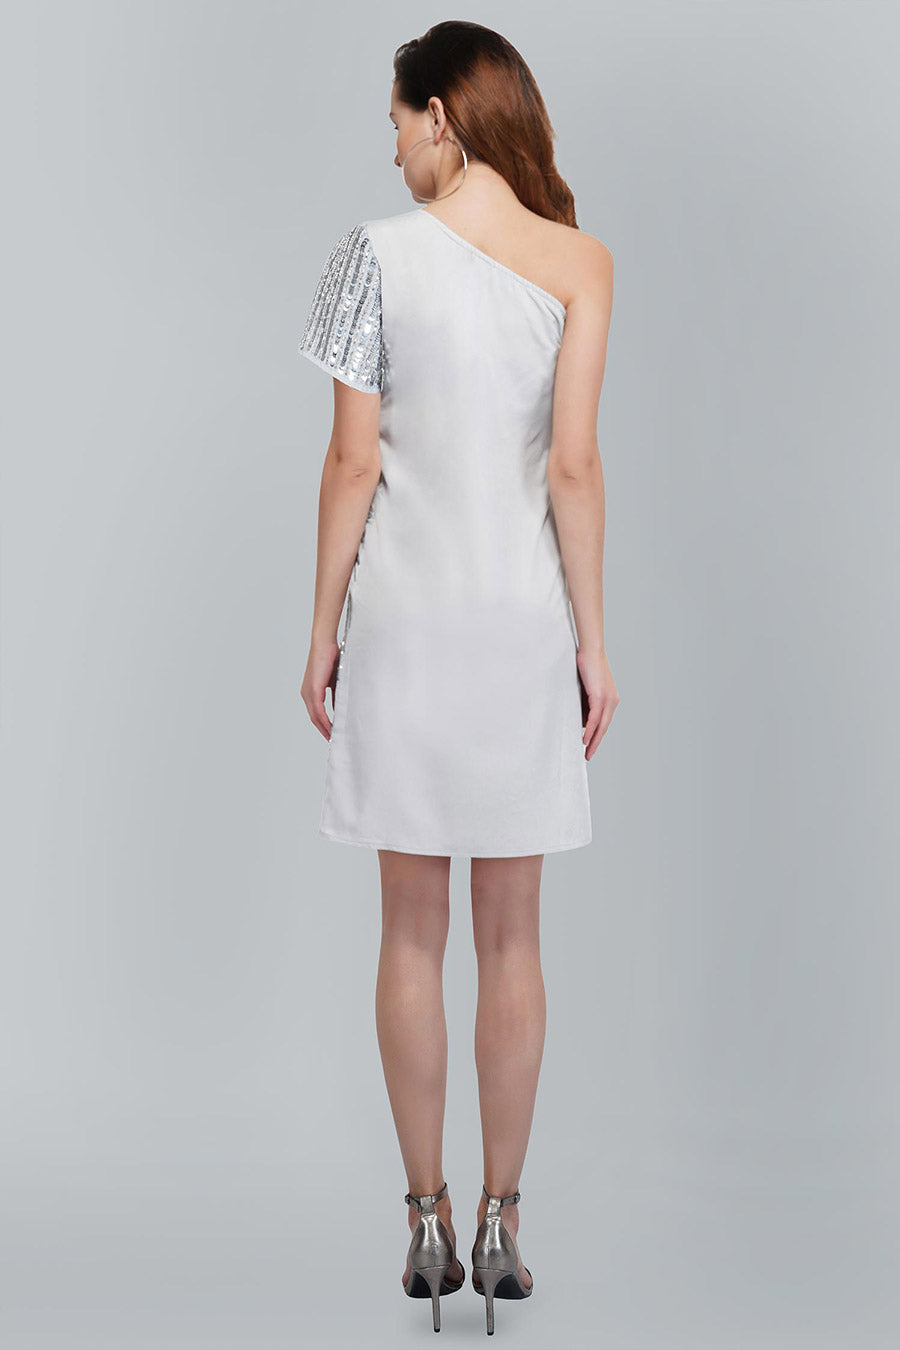 One Shoulder Silver Embellished Dress